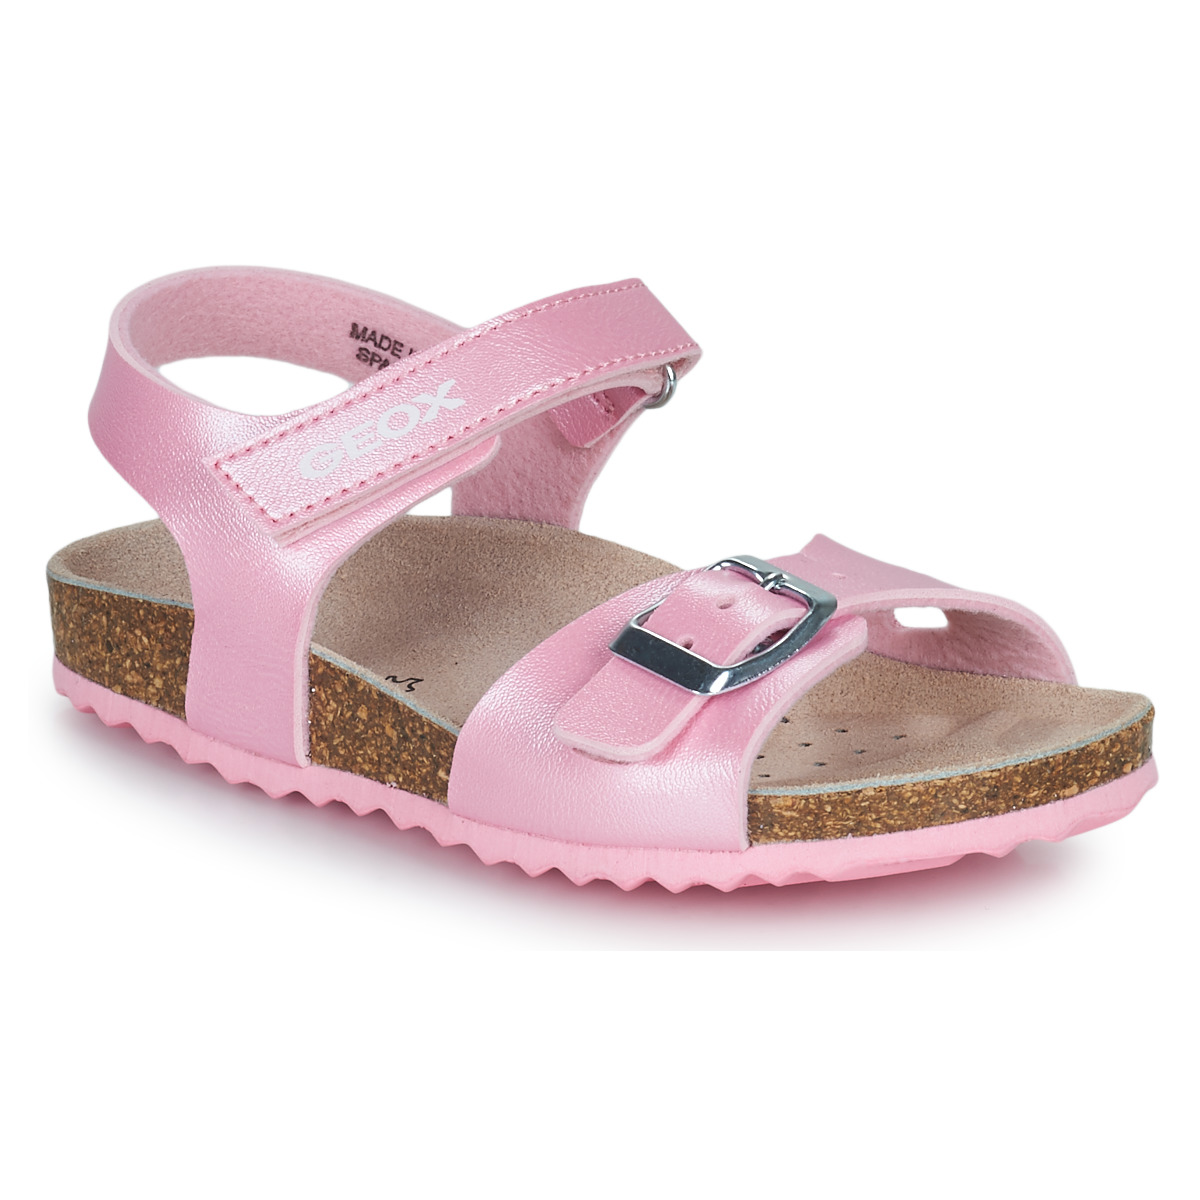 kengät Tytöt Sandaalit ja avokkaat Geox J ADRIEL GIRL C Vaaleanpunainen